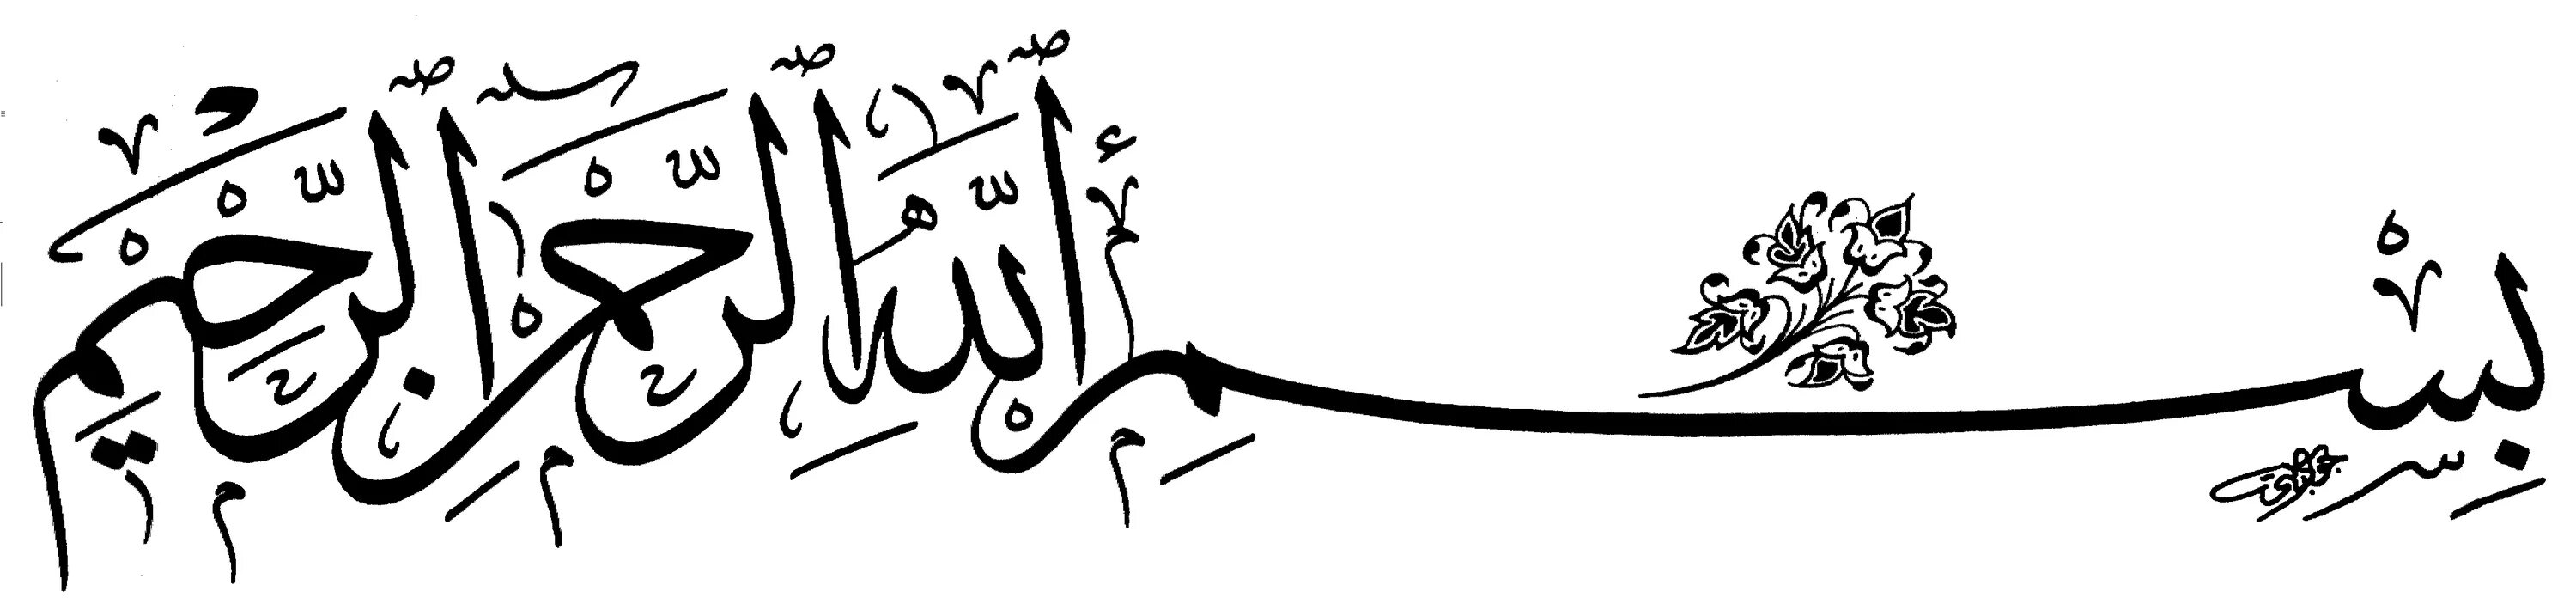 Во имя Аллаха Милостивого Милосердного. Арабские надписи. Басмала на арабском. Bismillahirrahmanirrahim на арабском. Милосердный на арабском